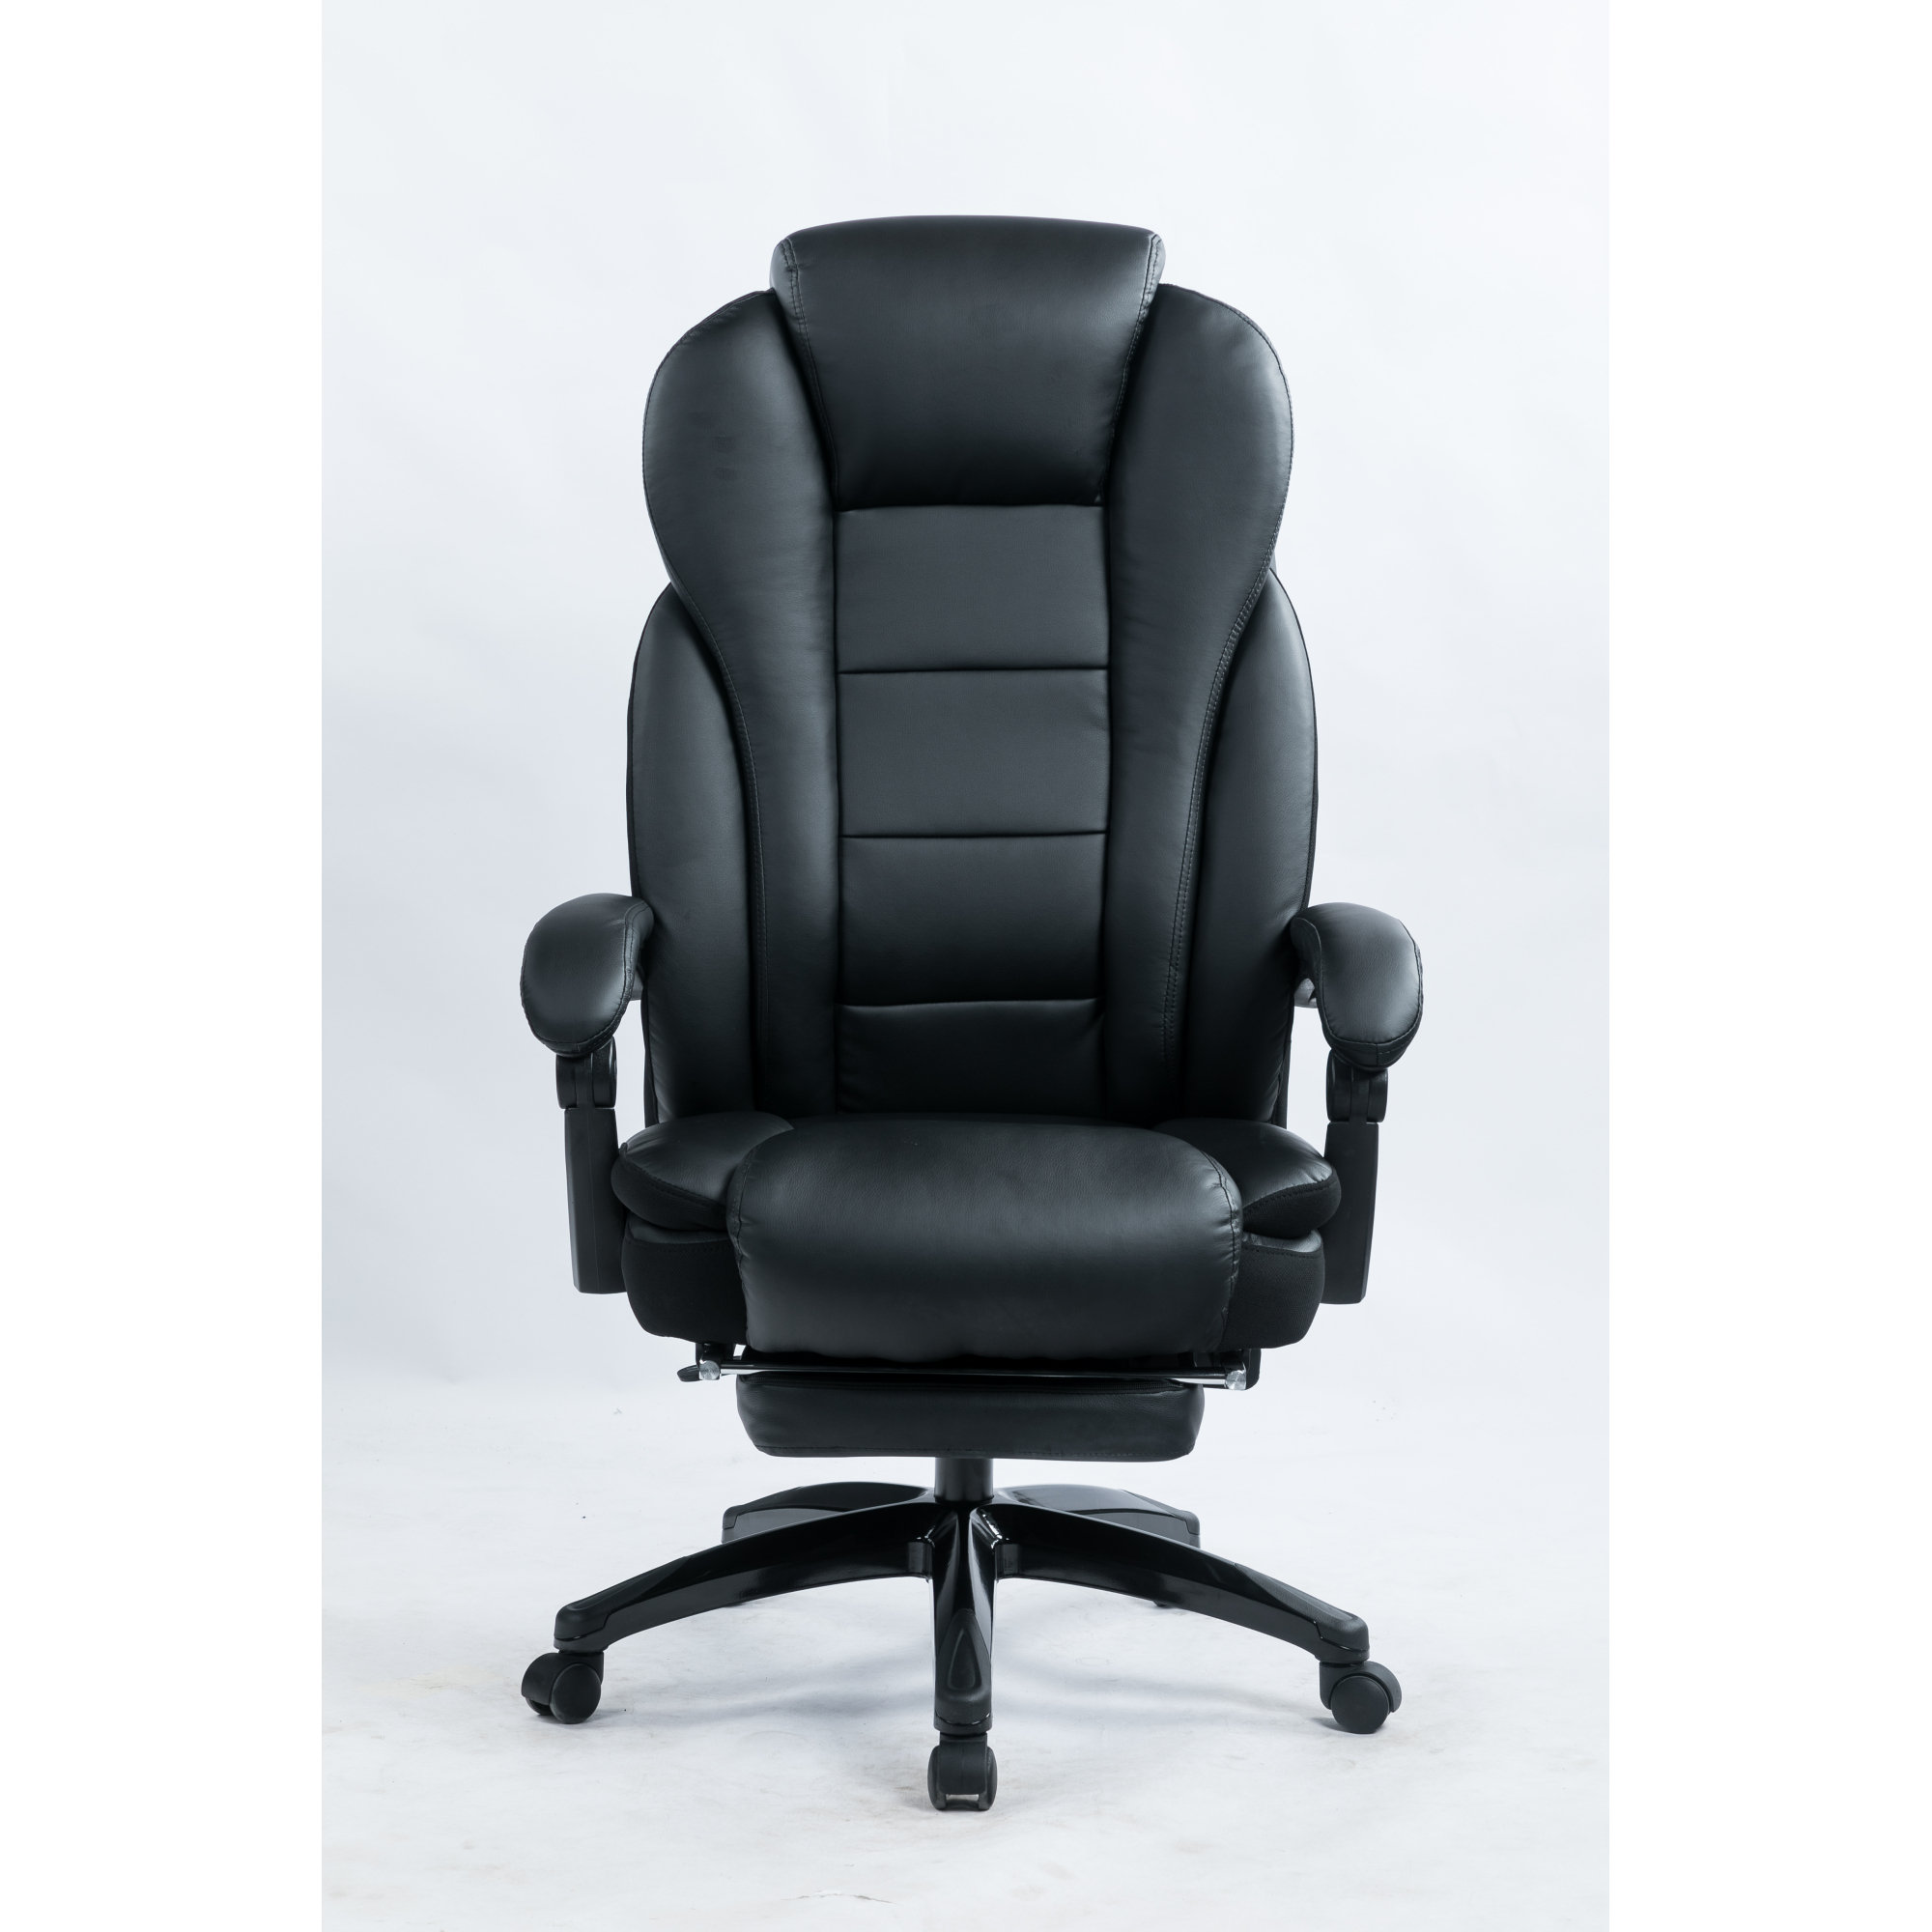 https://assets.wfcdn.com/im/06465917/compr-r85/2484/248460379/ergonomic-executive-chair.jpg